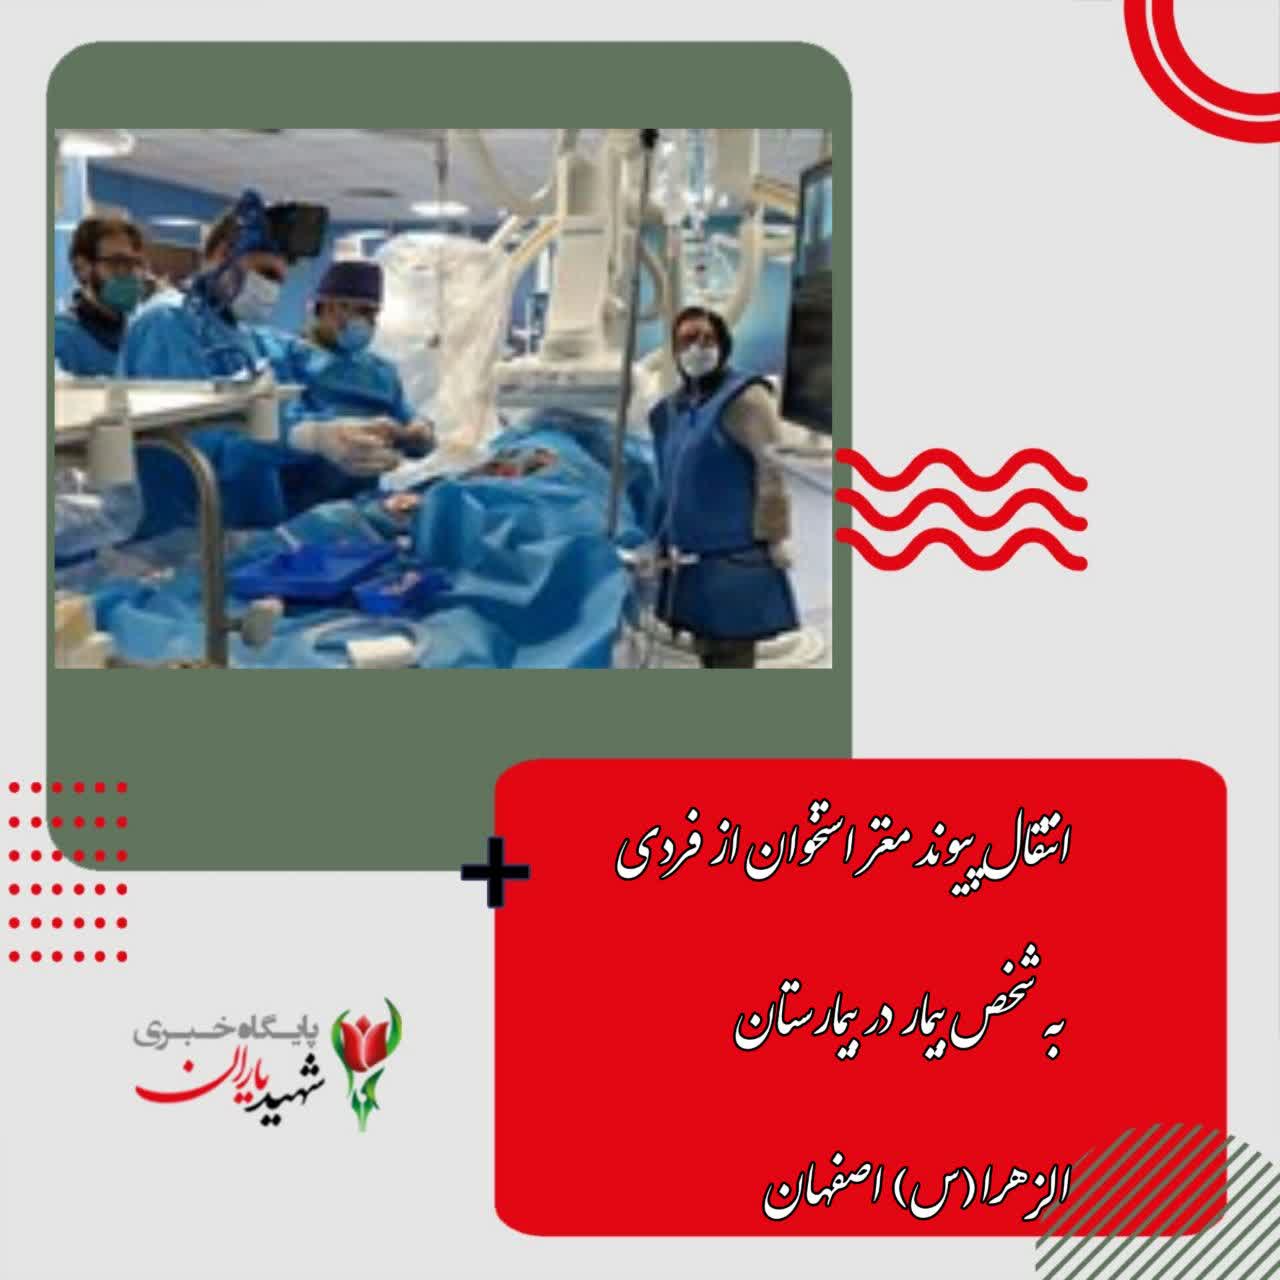 انتقال پیوند مغز استخوان از فردی به شخص بیمار در بیمارستان الزهرا(س) اصفهان